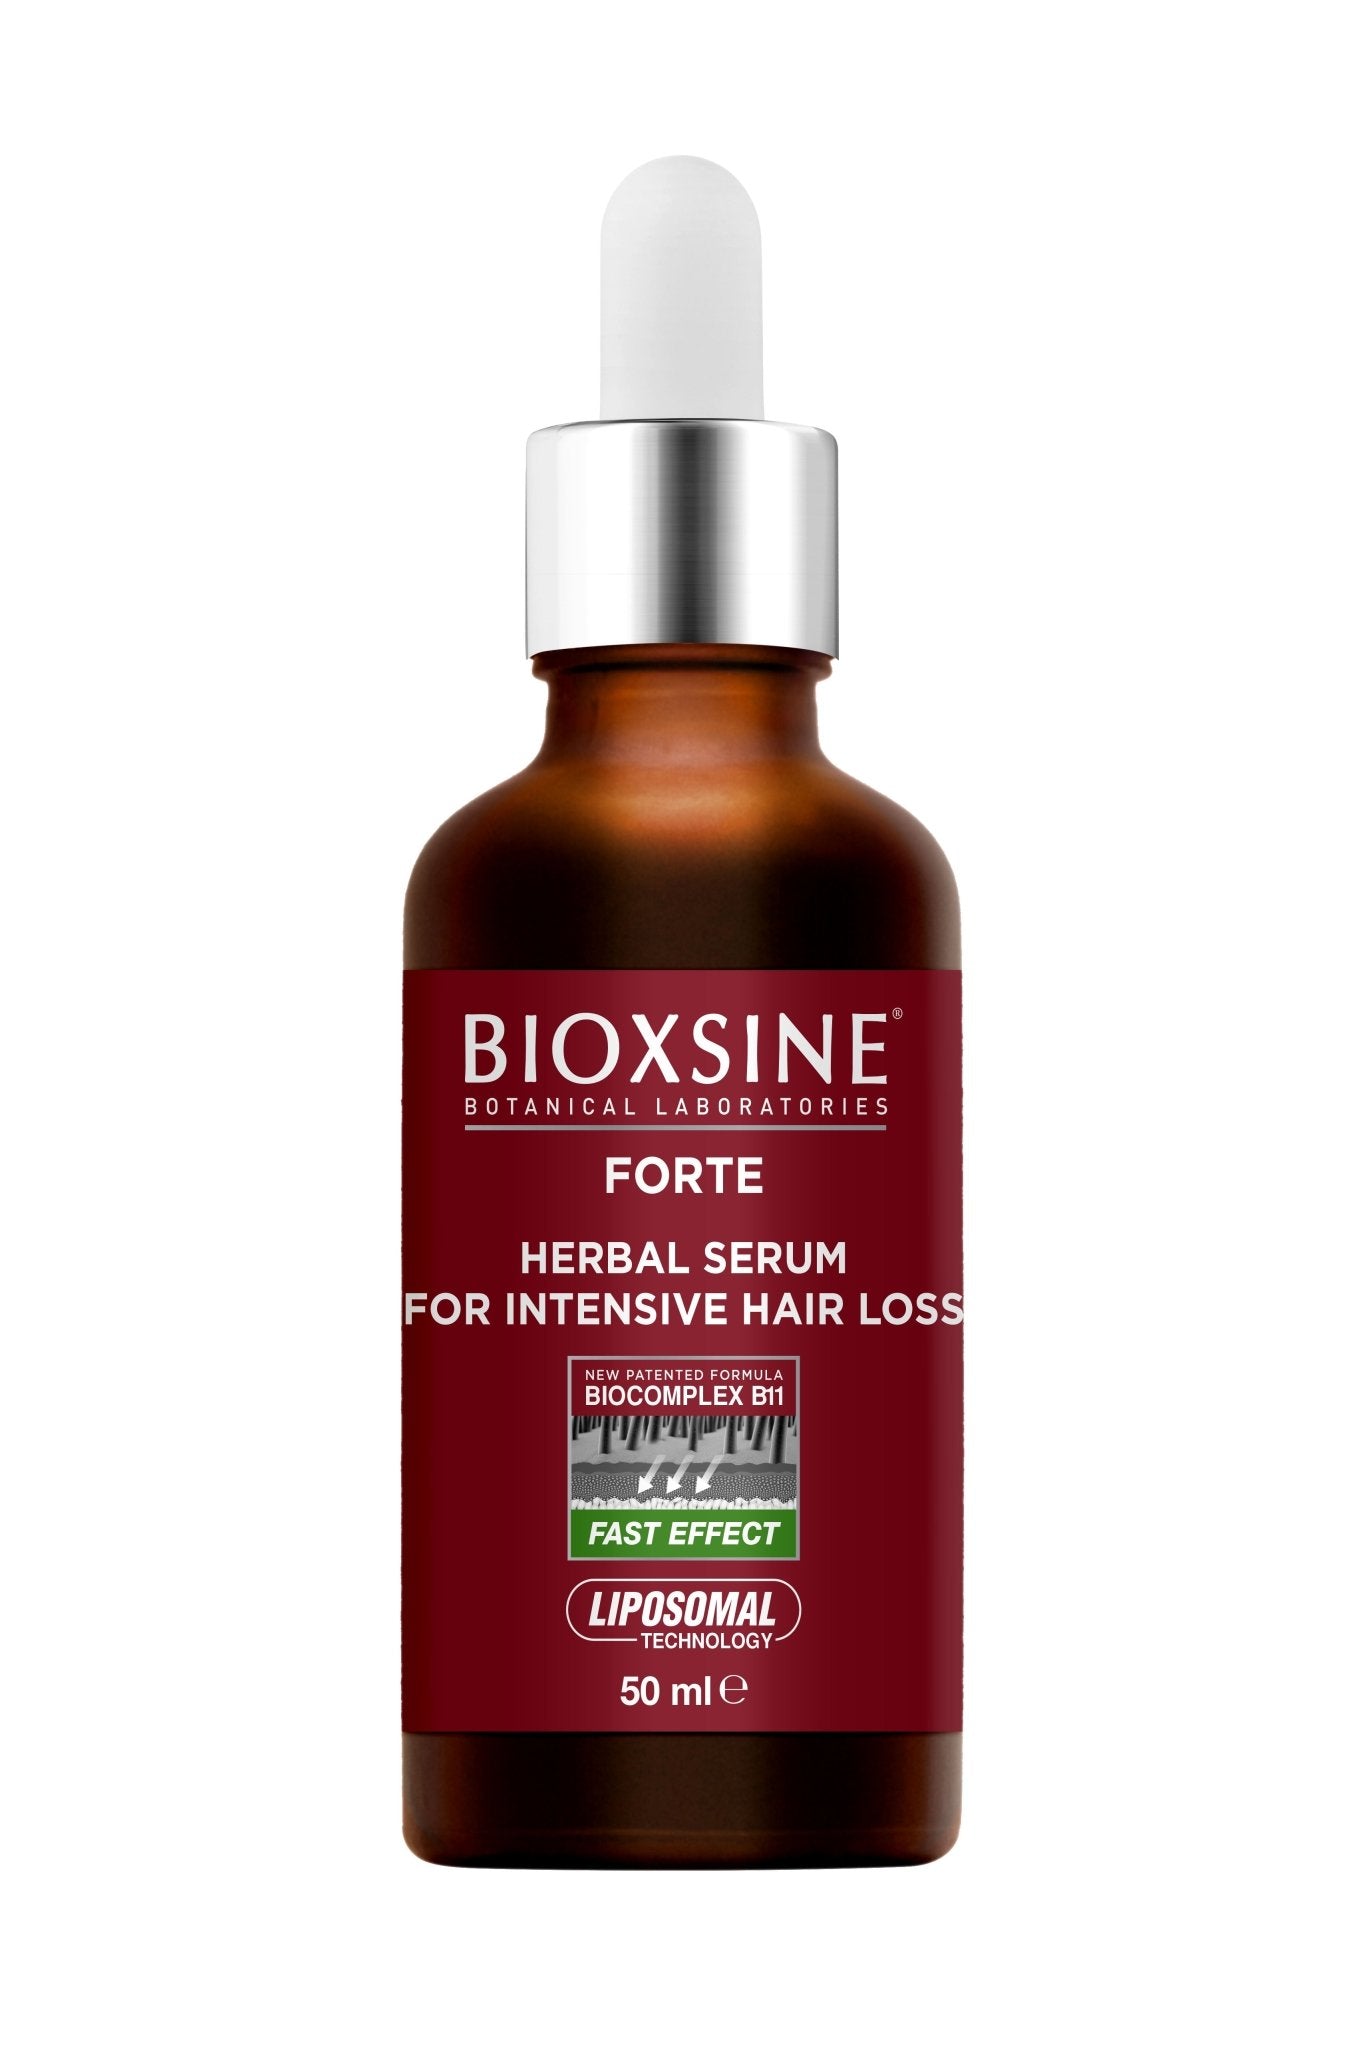 BIOXSINE serumas nuo intensyvaus plaukų slinkimo FORTE, 50 ml x 3 vnt. - Plaukui.lt